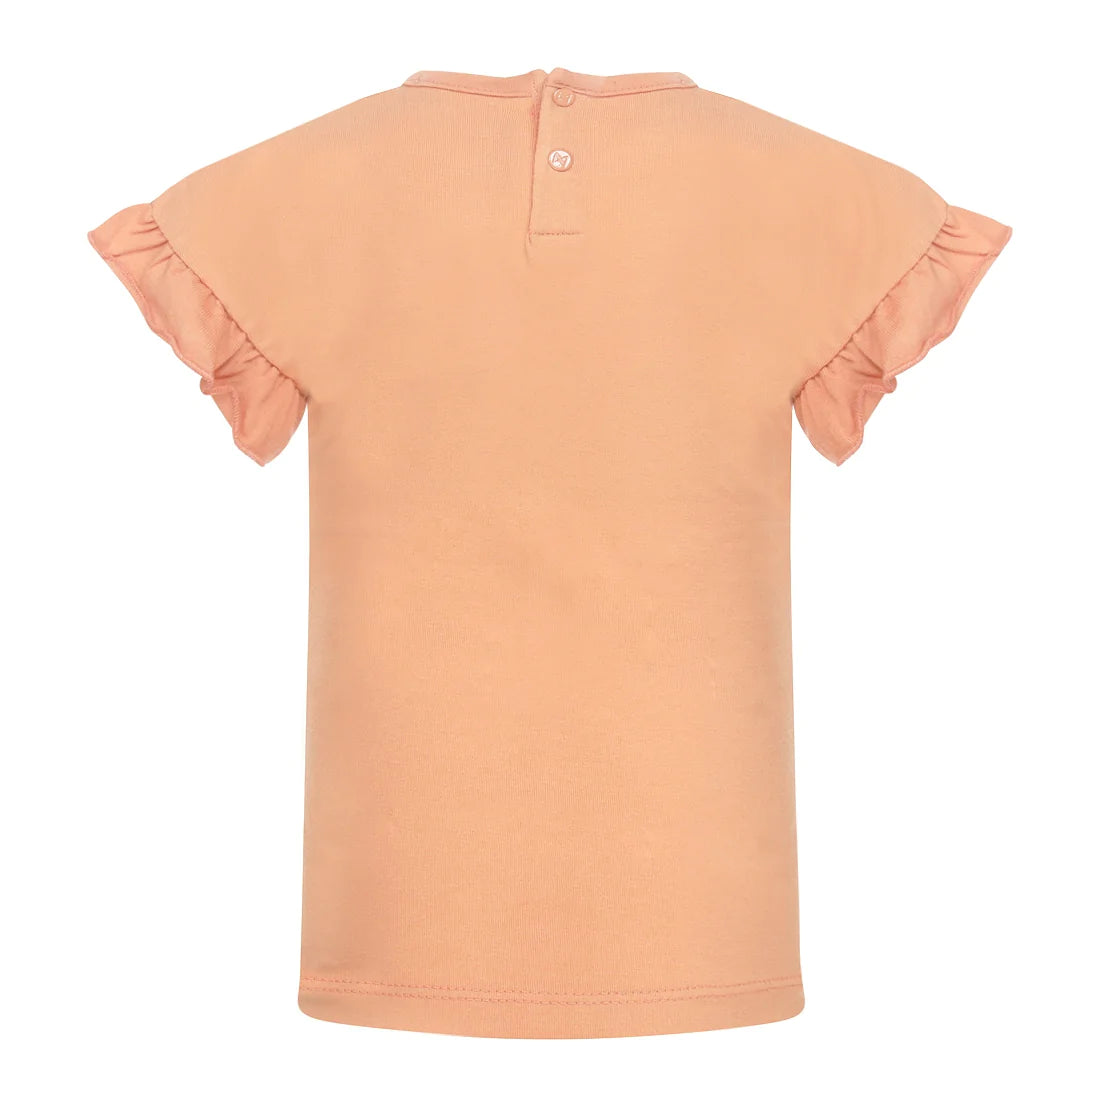 Meisjes T-shirt ss van Koko Noko in de kleur Faded orange in maat 128.